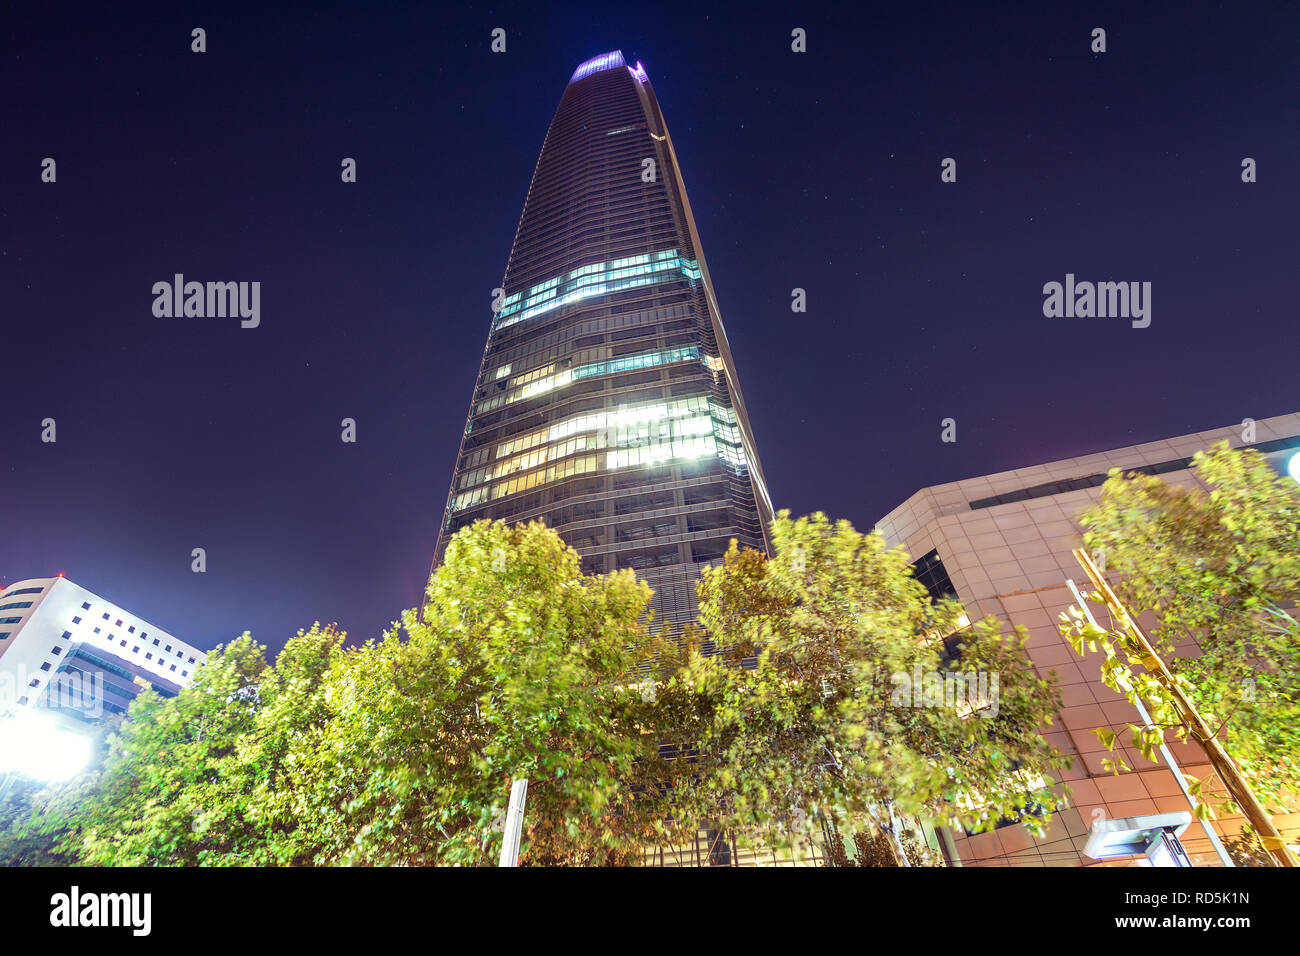 Gratte-ciel de nuit Costanera Center - Santiago, Chili Banque D'Images